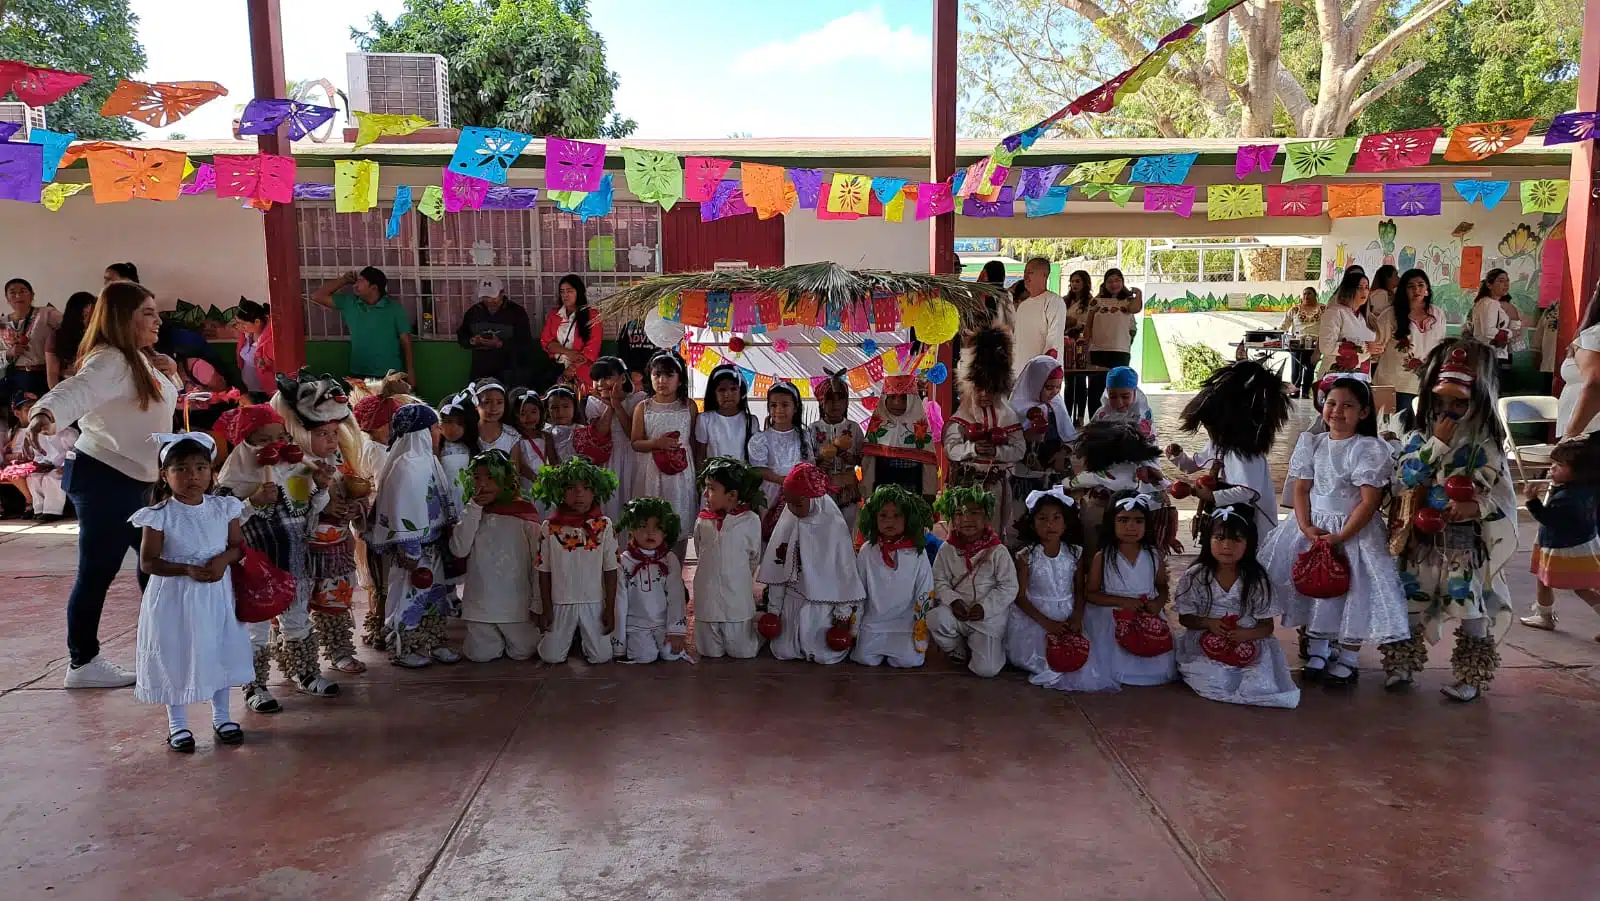 festival yoreme realizado en el jardín de niños “Bertha Voon Glumer” de San Miguel Zapotitlán